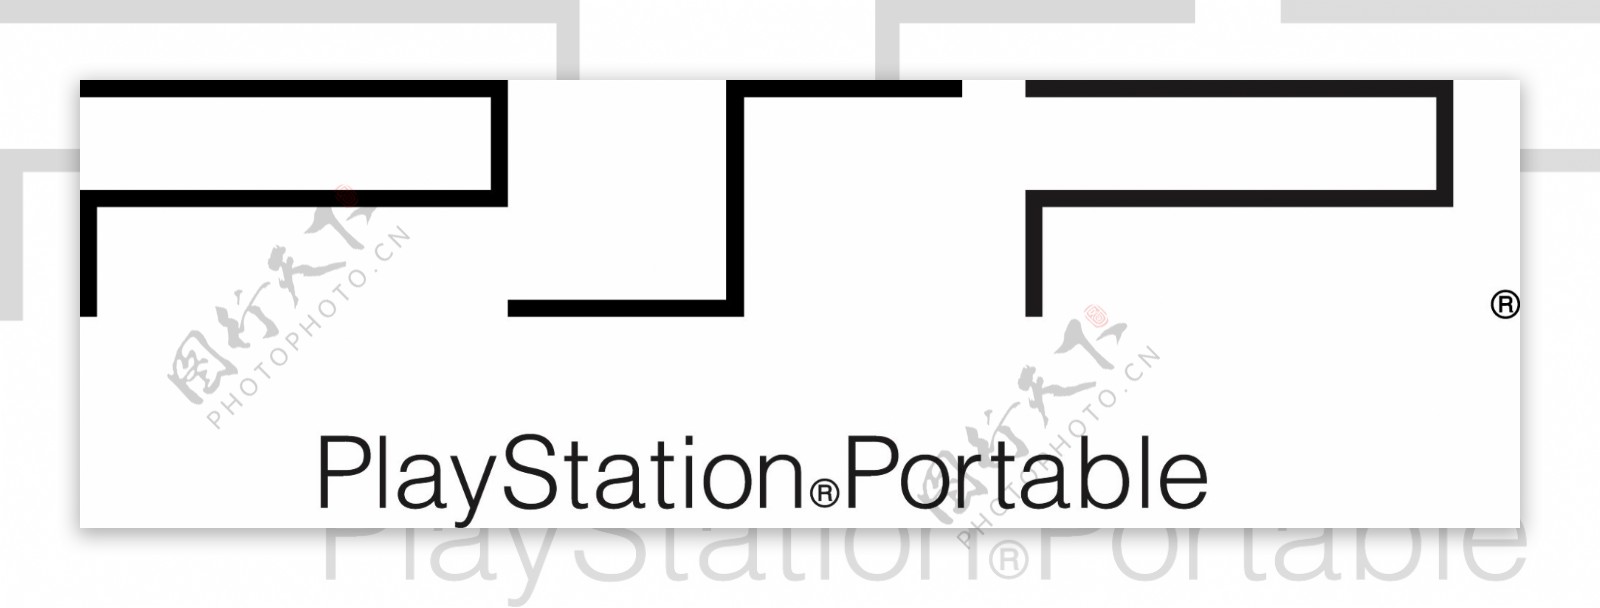 索尼PSP游戏机logo标志矢量图